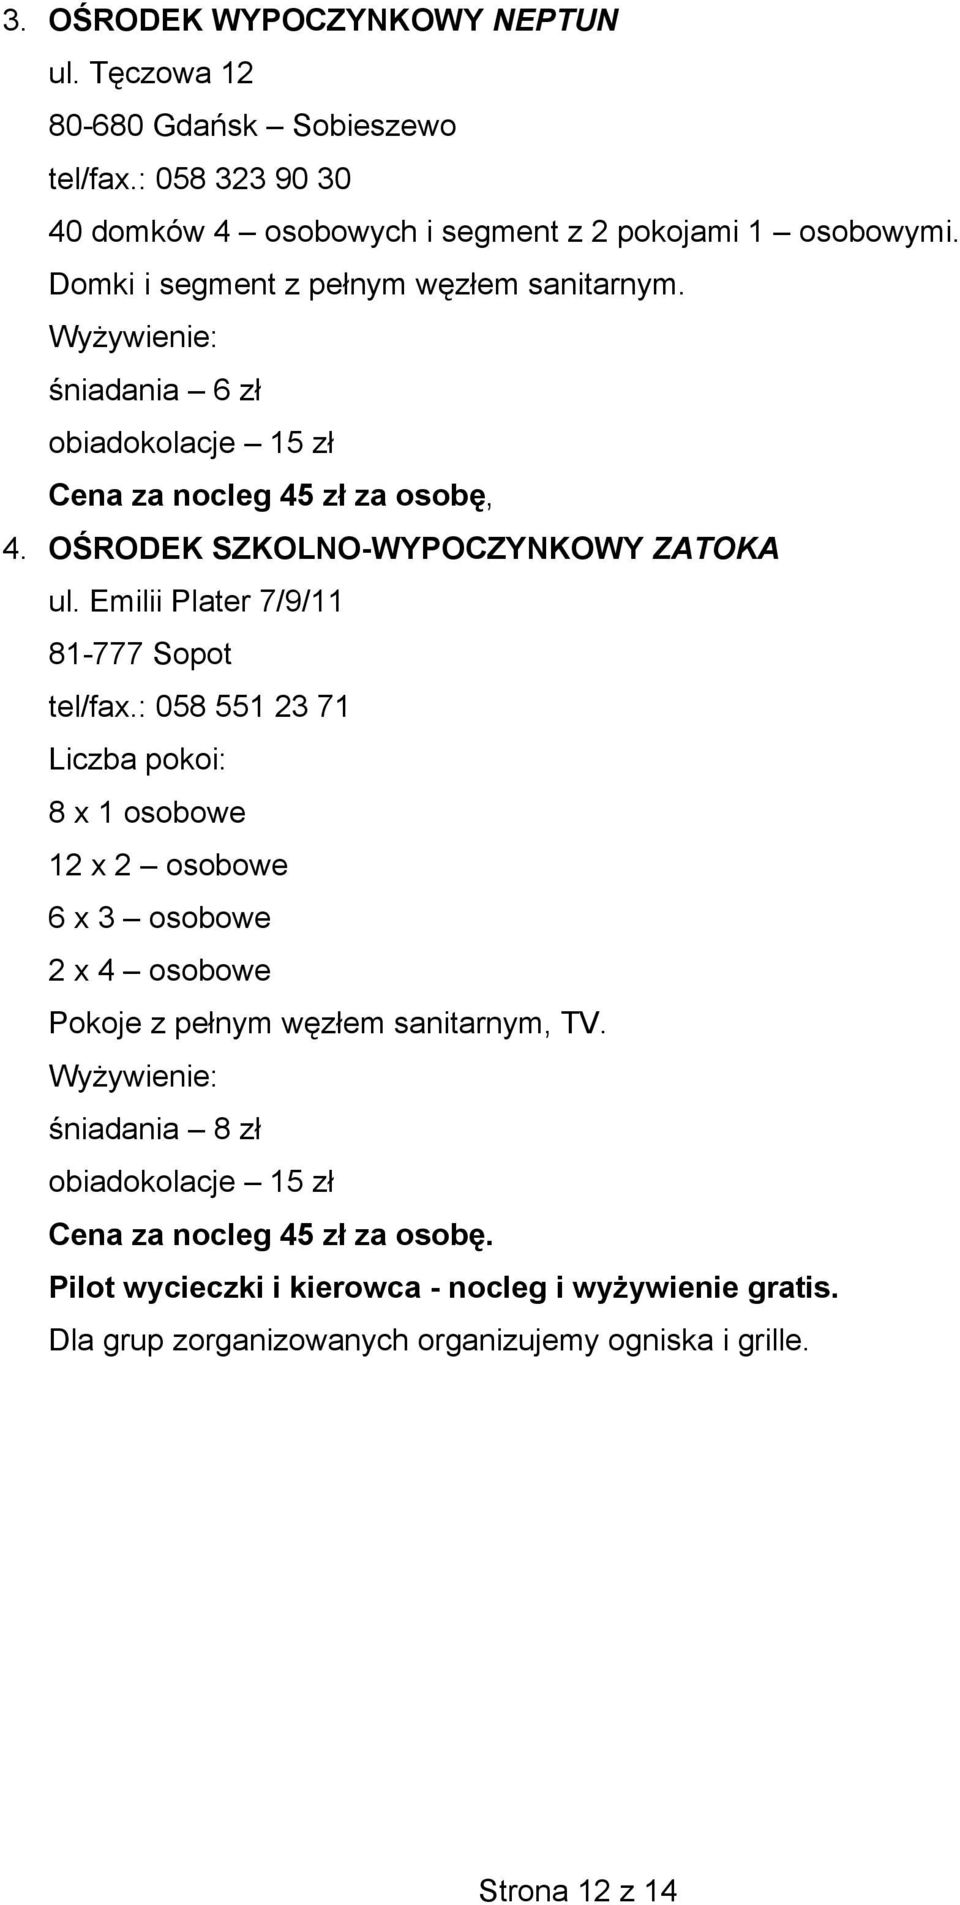 Emilii Plater 7/9/11 81-777 Sopot tel/fax.: 058 551 23 71 Liczba pokoi: 8 x 1 osobowe 12 x 2 osobowe 6 x 3 osobowe 2 x 4 osobowe Pokoje z pełnym węzłem sanitarnym, TV.